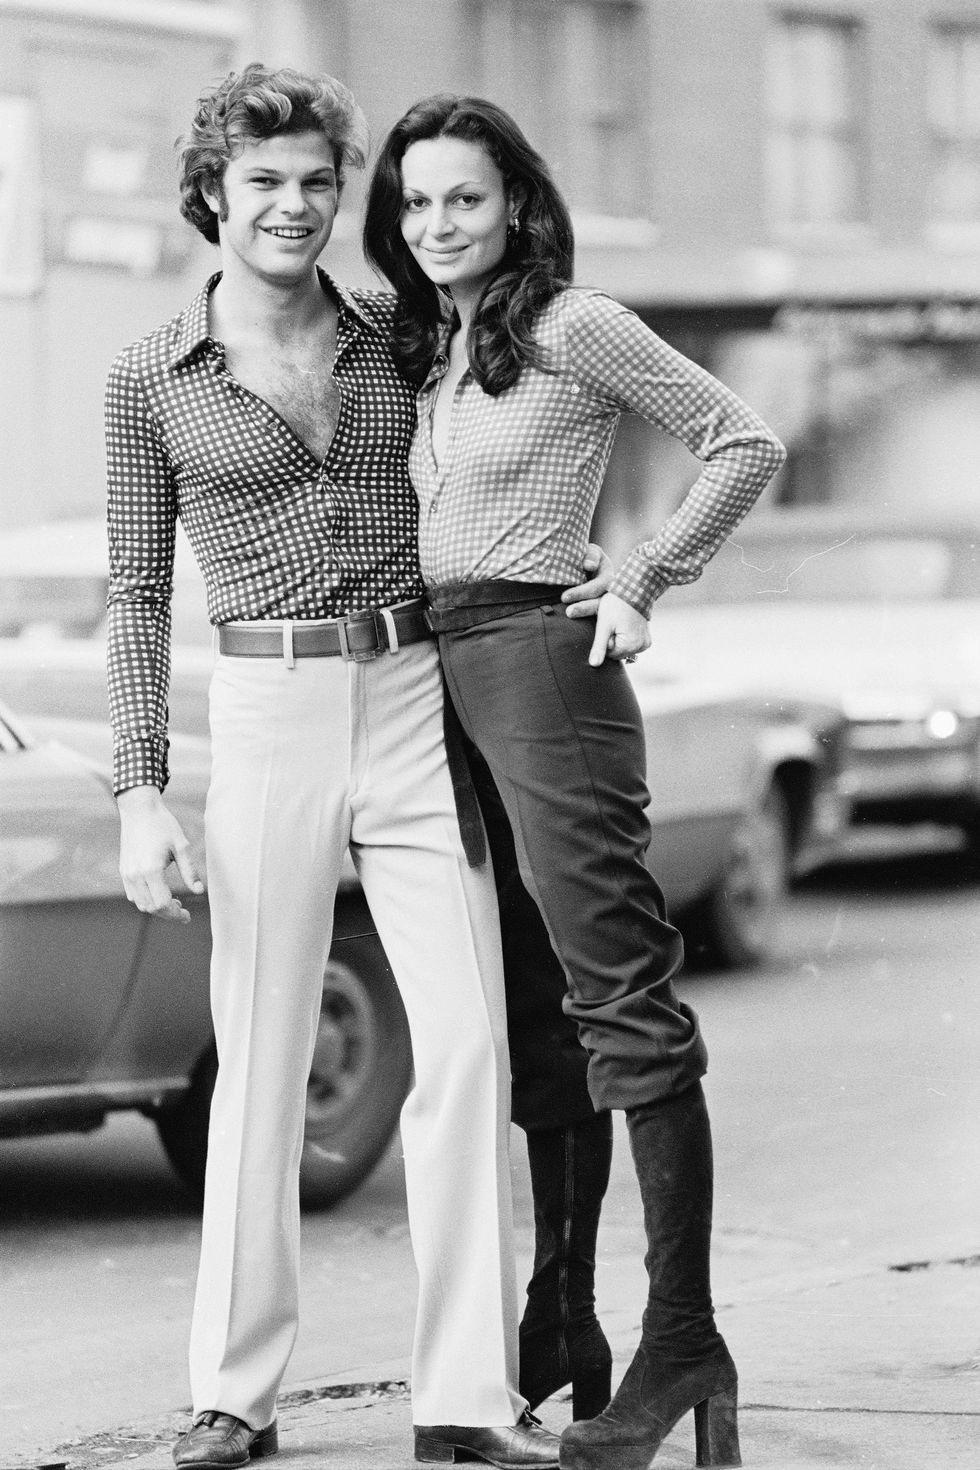 1970s in Women's Fashion  What Did Women Wear in the 70s?